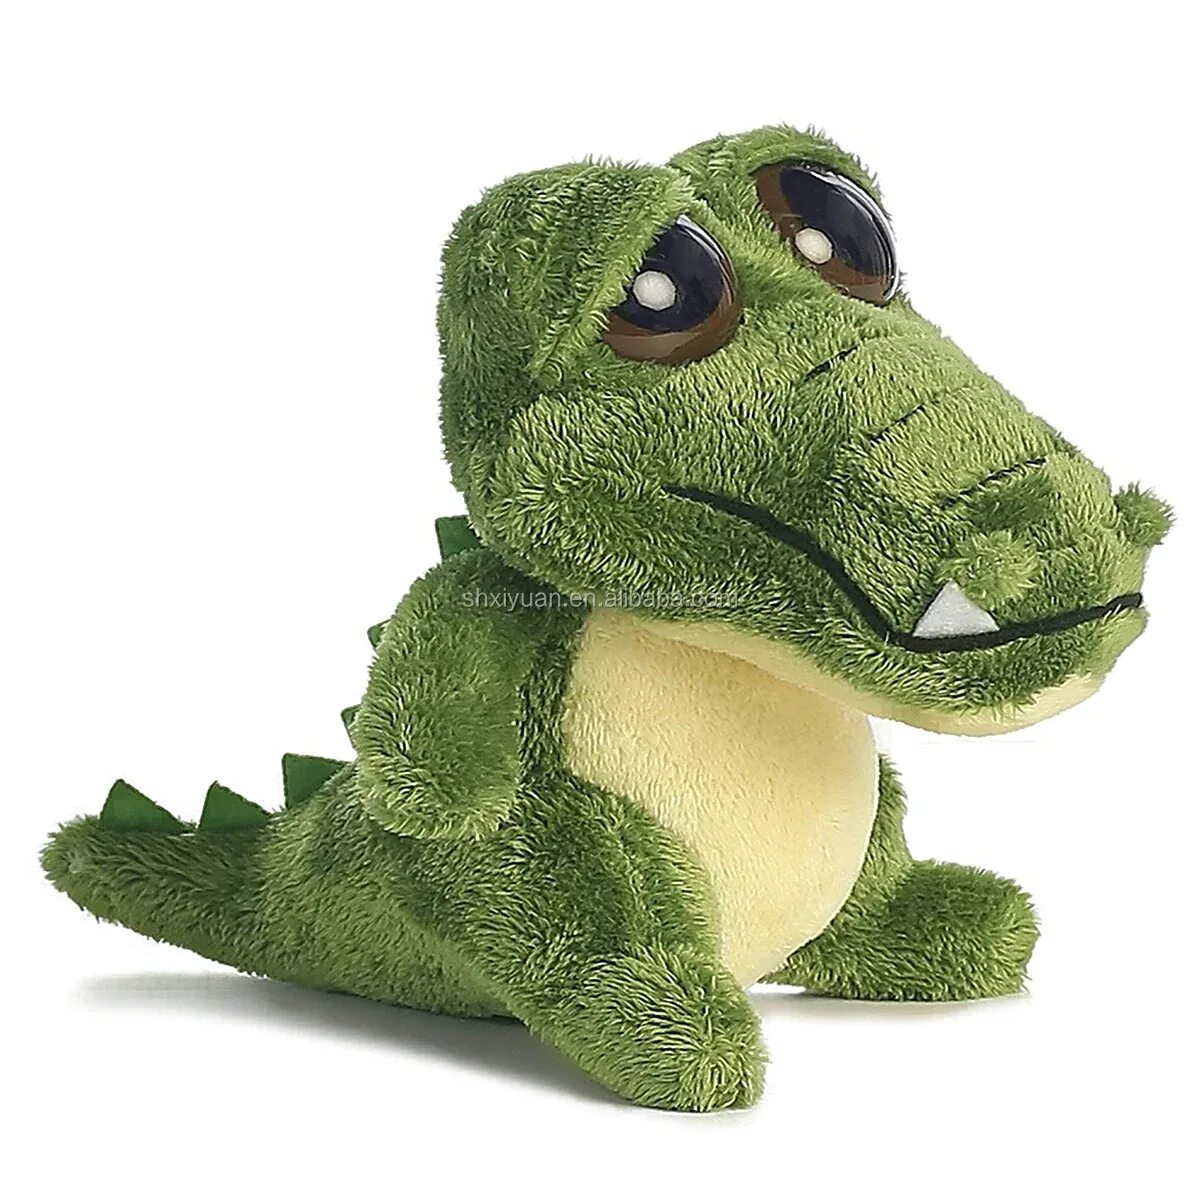 Купить крокодил про. Plush Toys игрушки крокодил. Игрушка «Crocodile» 40 см. Plush Toys игрушка мягконабивная крокодил. Мягкая игрушка крокодил Сэм, малый, 43/13 см, 934345.